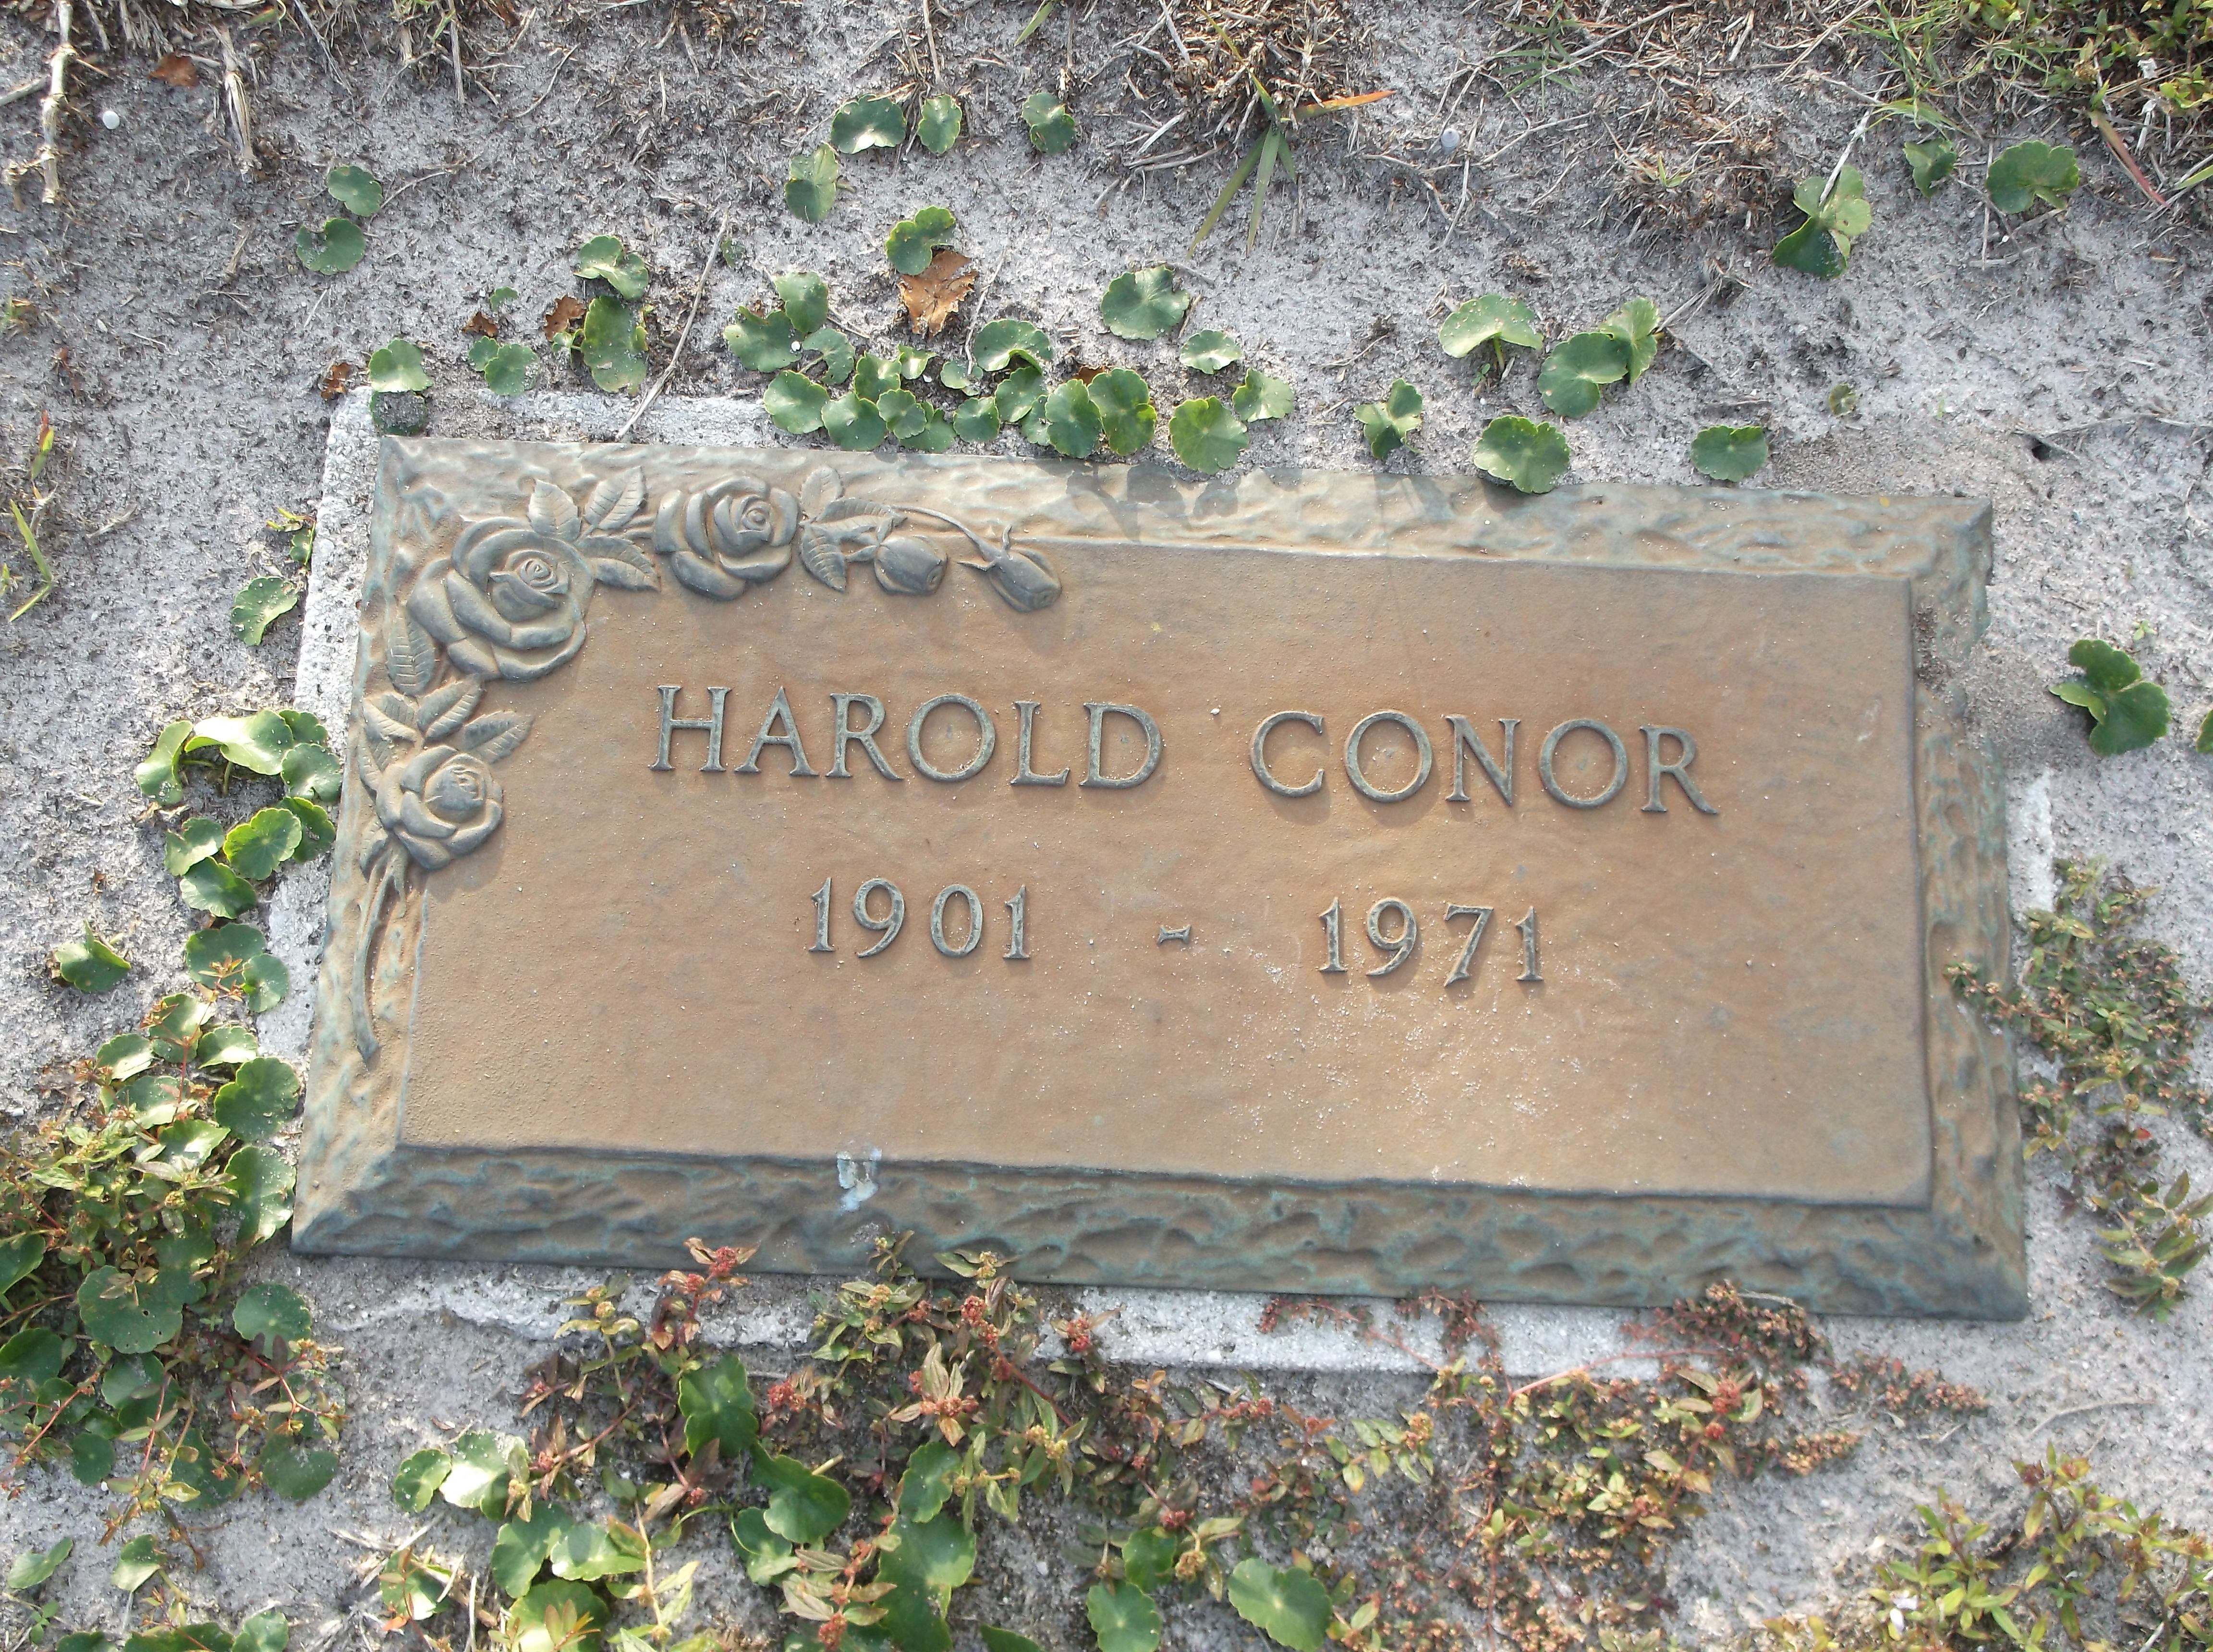 Harold Conor